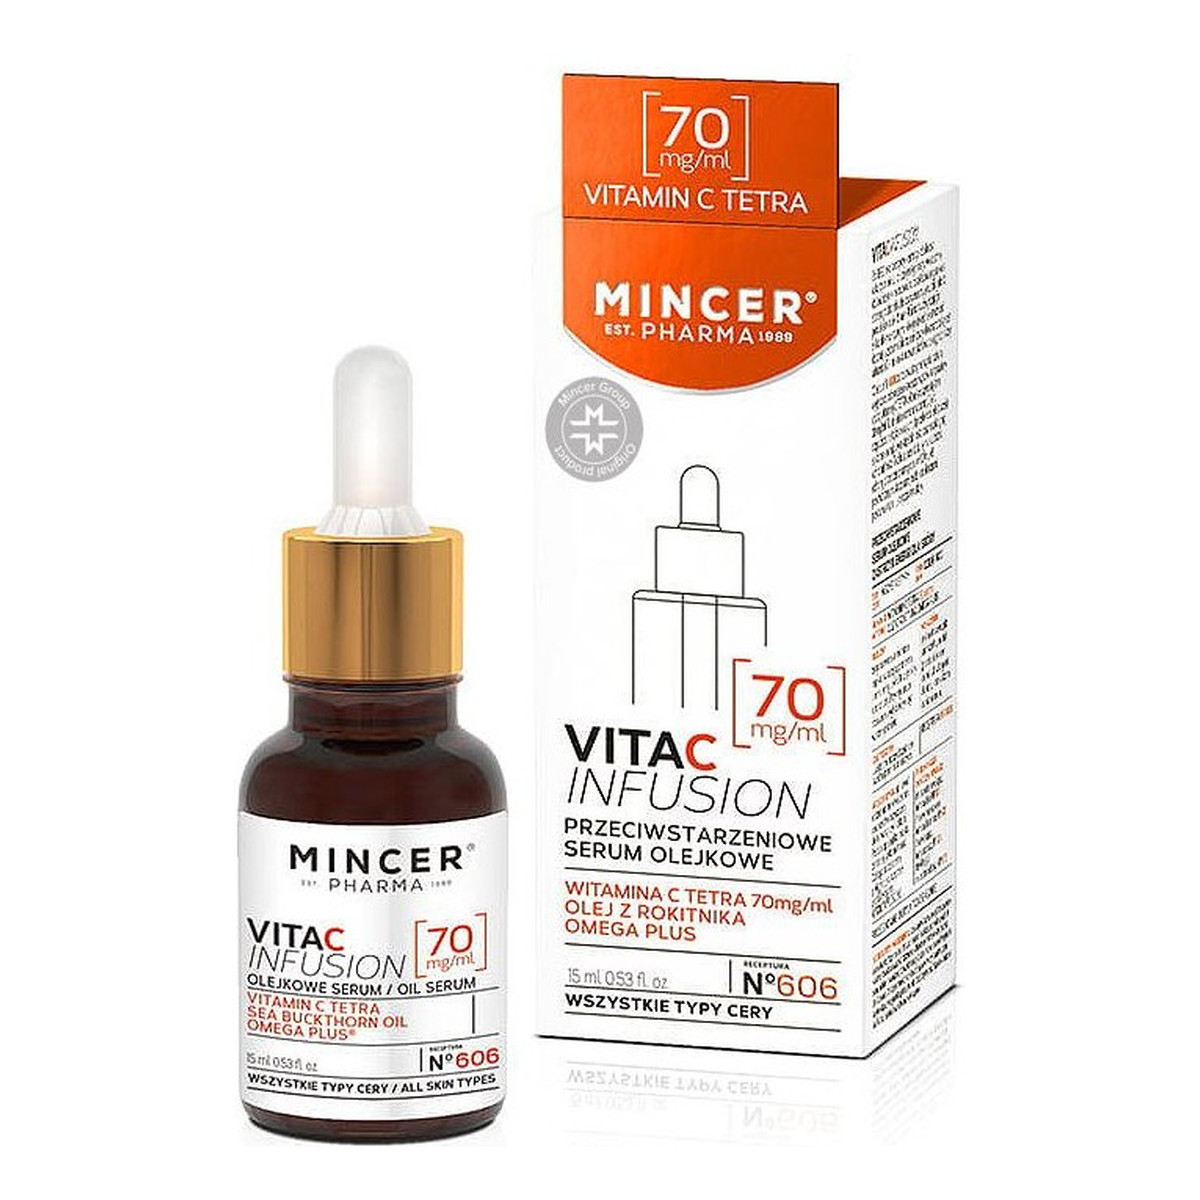 Mincer Pharma Vita C Infusion Przeciwstarzeniowe Serum Olejkowe No 606 15ml